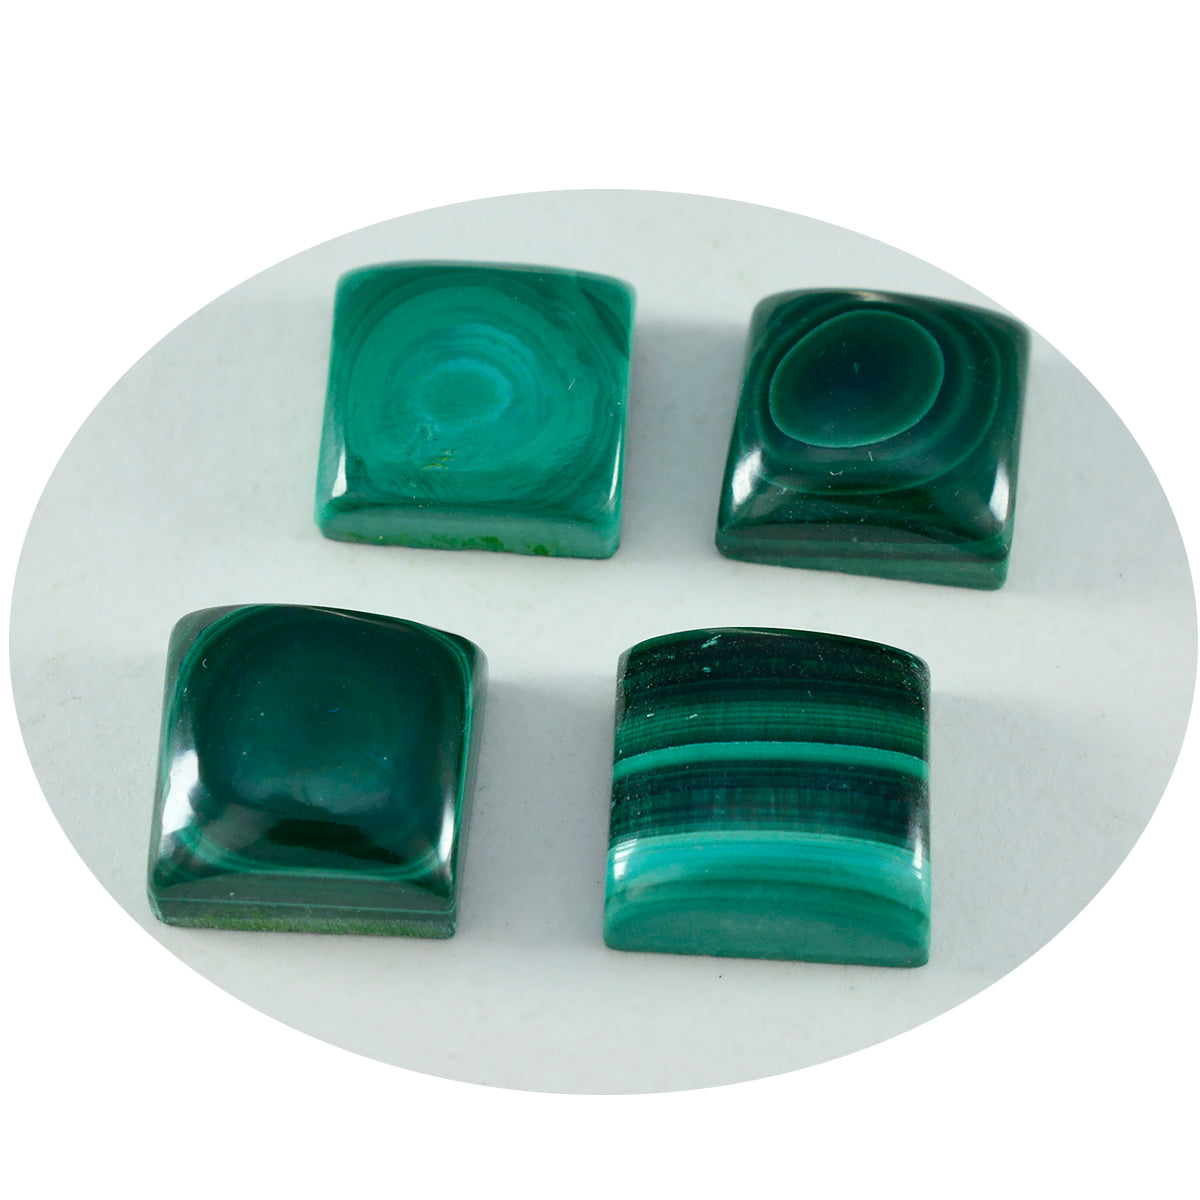 Riyogems 1PC Green Malachite Cabochon 12x12 mm Square Shape A+ Quality Loose Stone